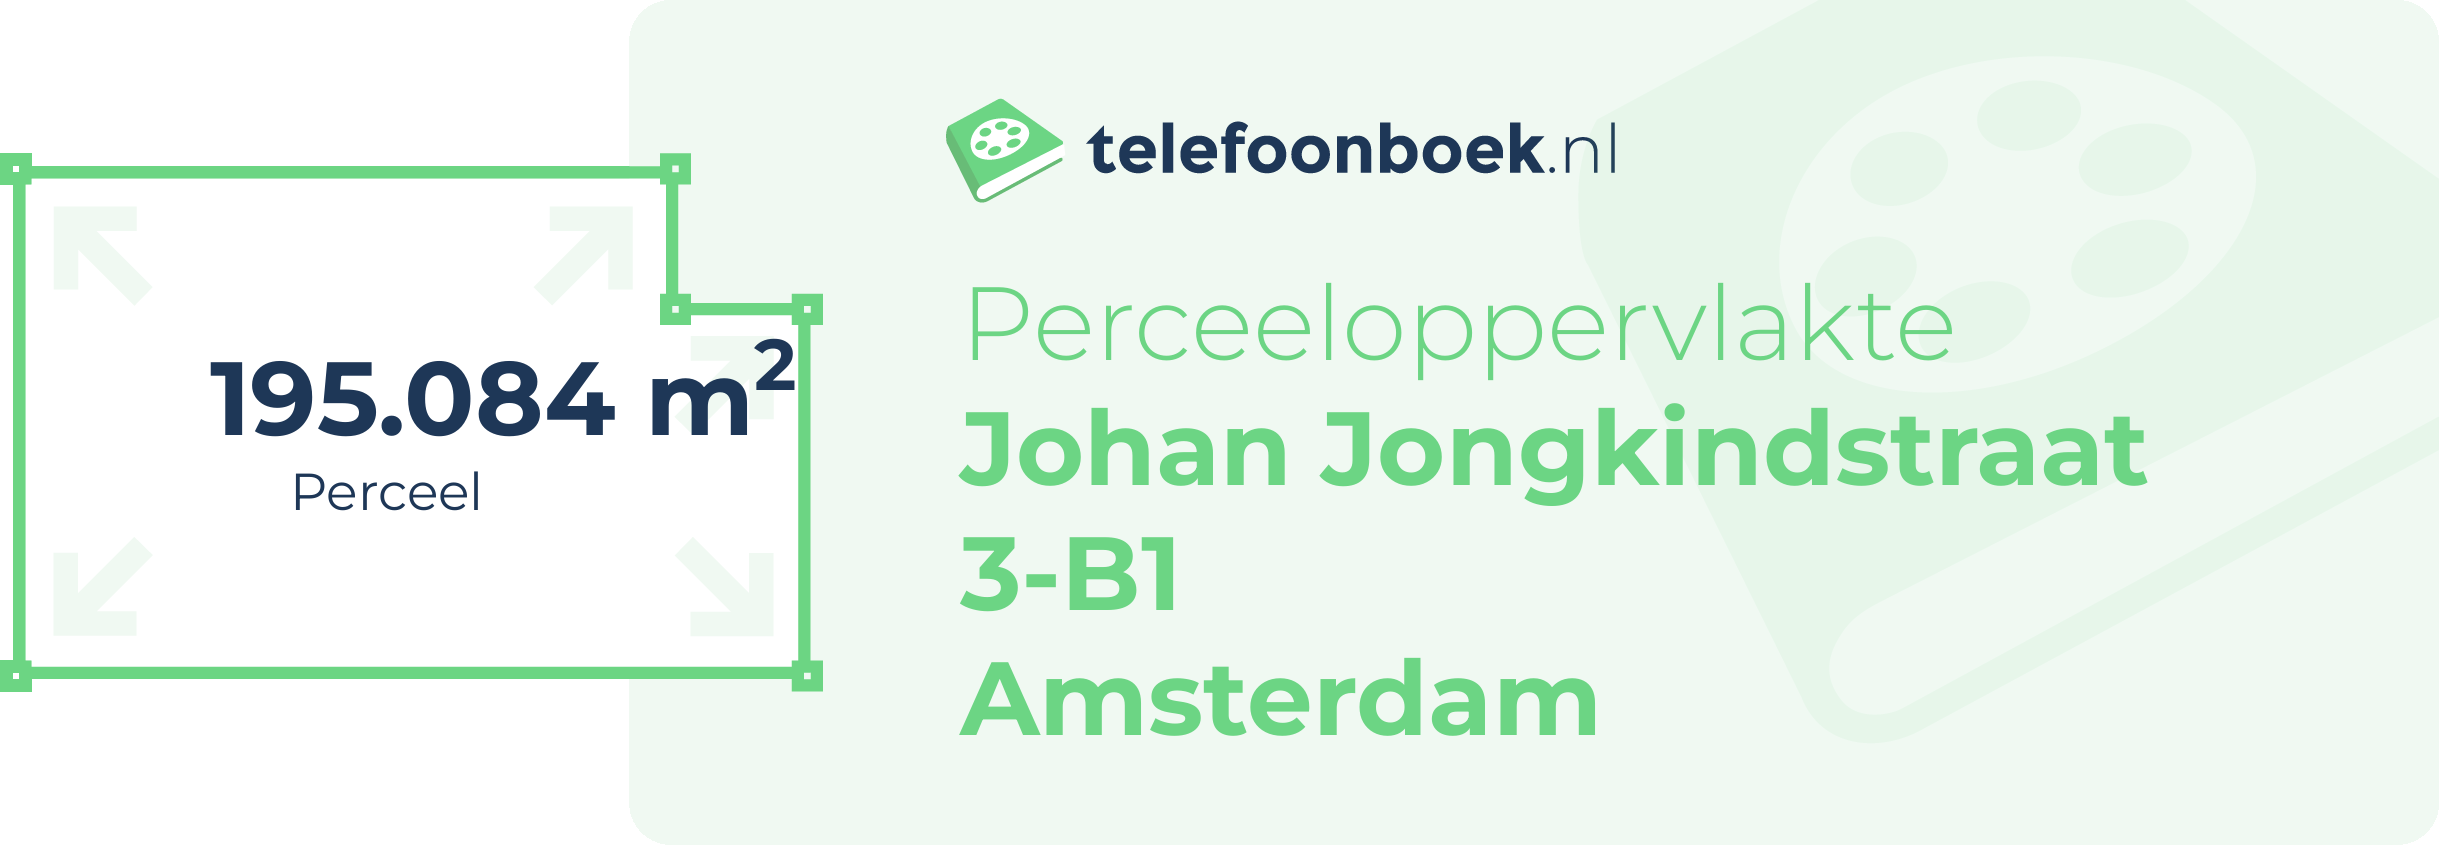 Perceeloppervlakte Johan Jongkindstraat 3-B1 Amsterdam